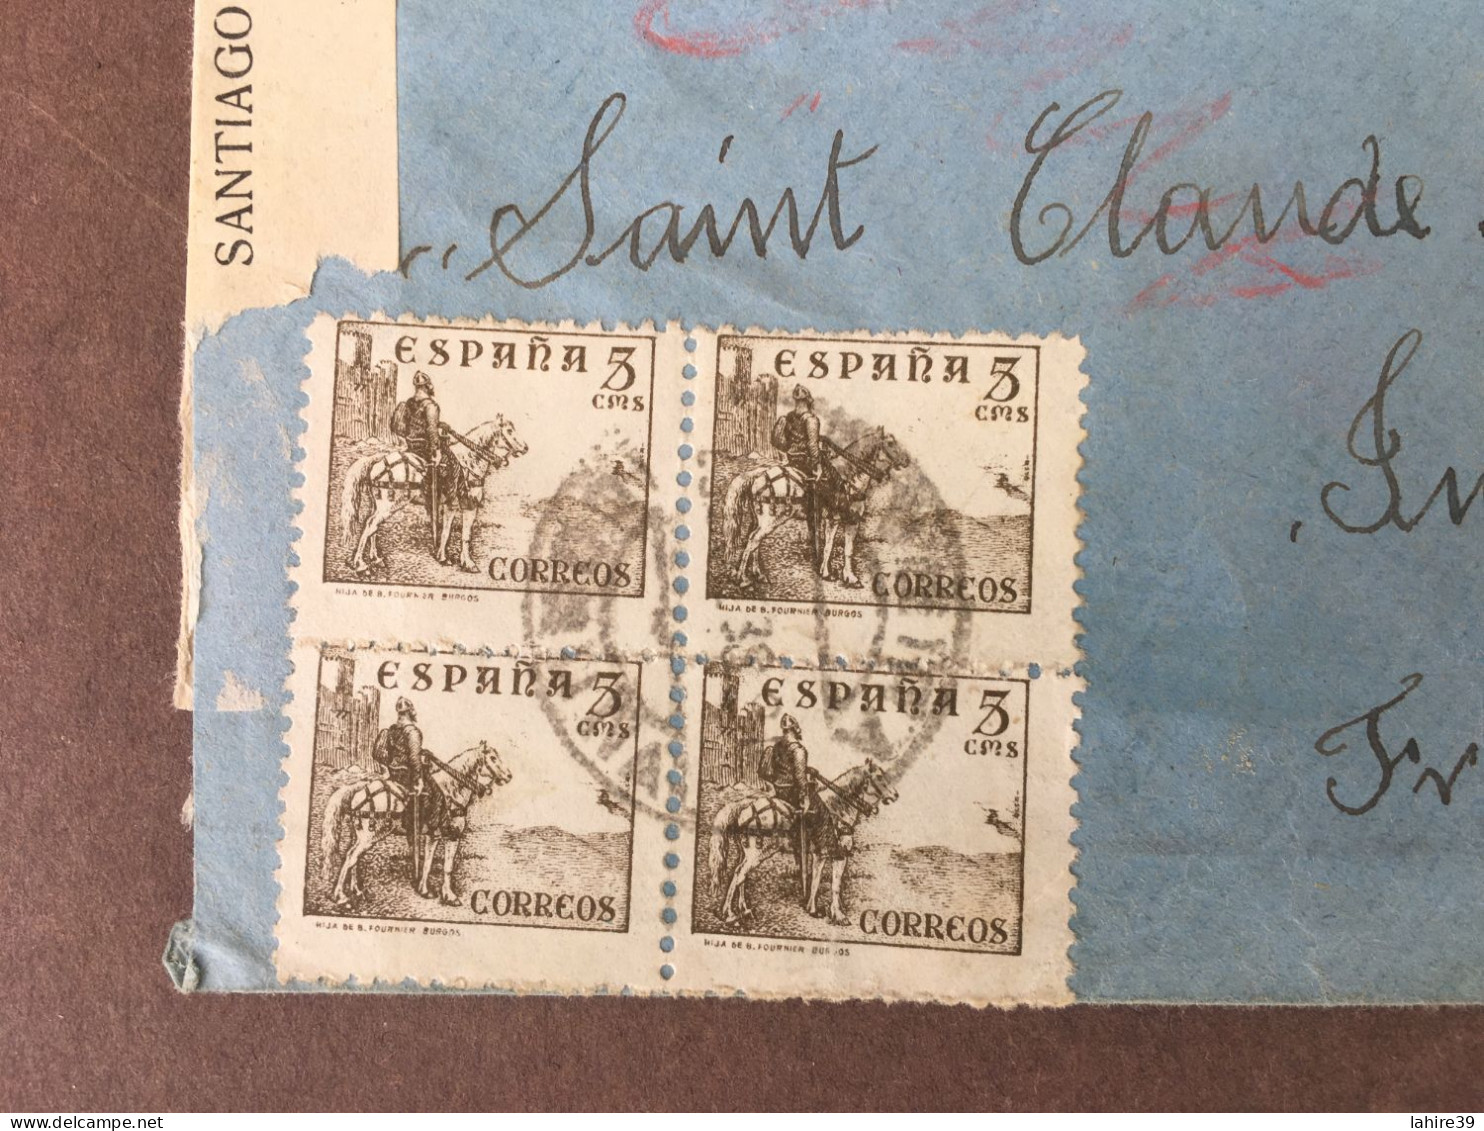 Enveloppe Timbrée / Censure Militaire / Iviva Espana / Espagne / 1938 - Brieven En Documenten